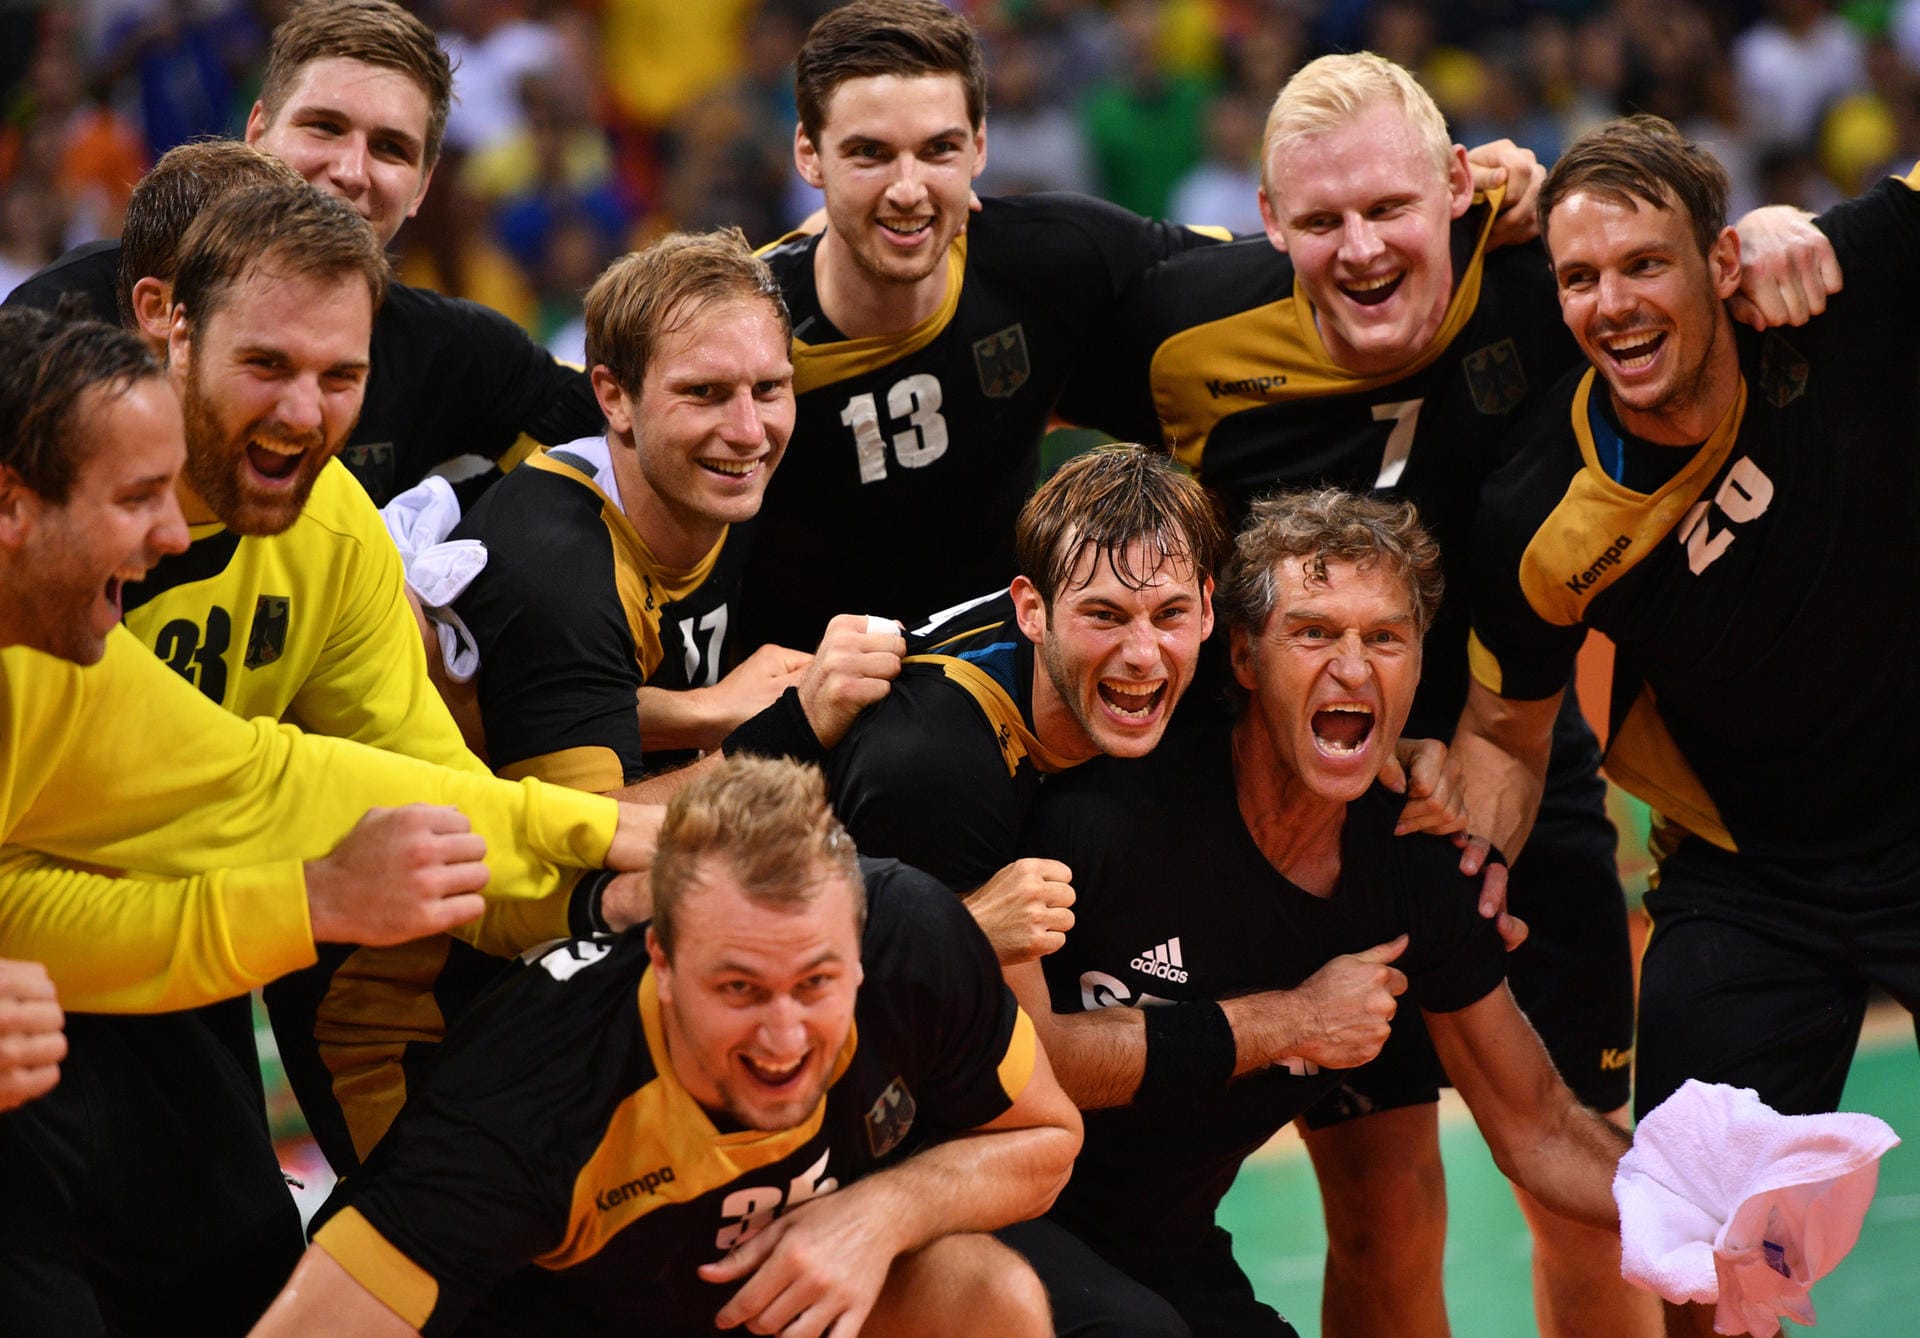 Die deutschen Handball-Männer schnappen sich Bronze im kleinen Finale gegen Polen! Die selbst ernannten Bad Boys krönen damit ein überragendes Jahr mit der ersten Olympia-Medaille für Deutschland seit Silber 2004 in Athen.